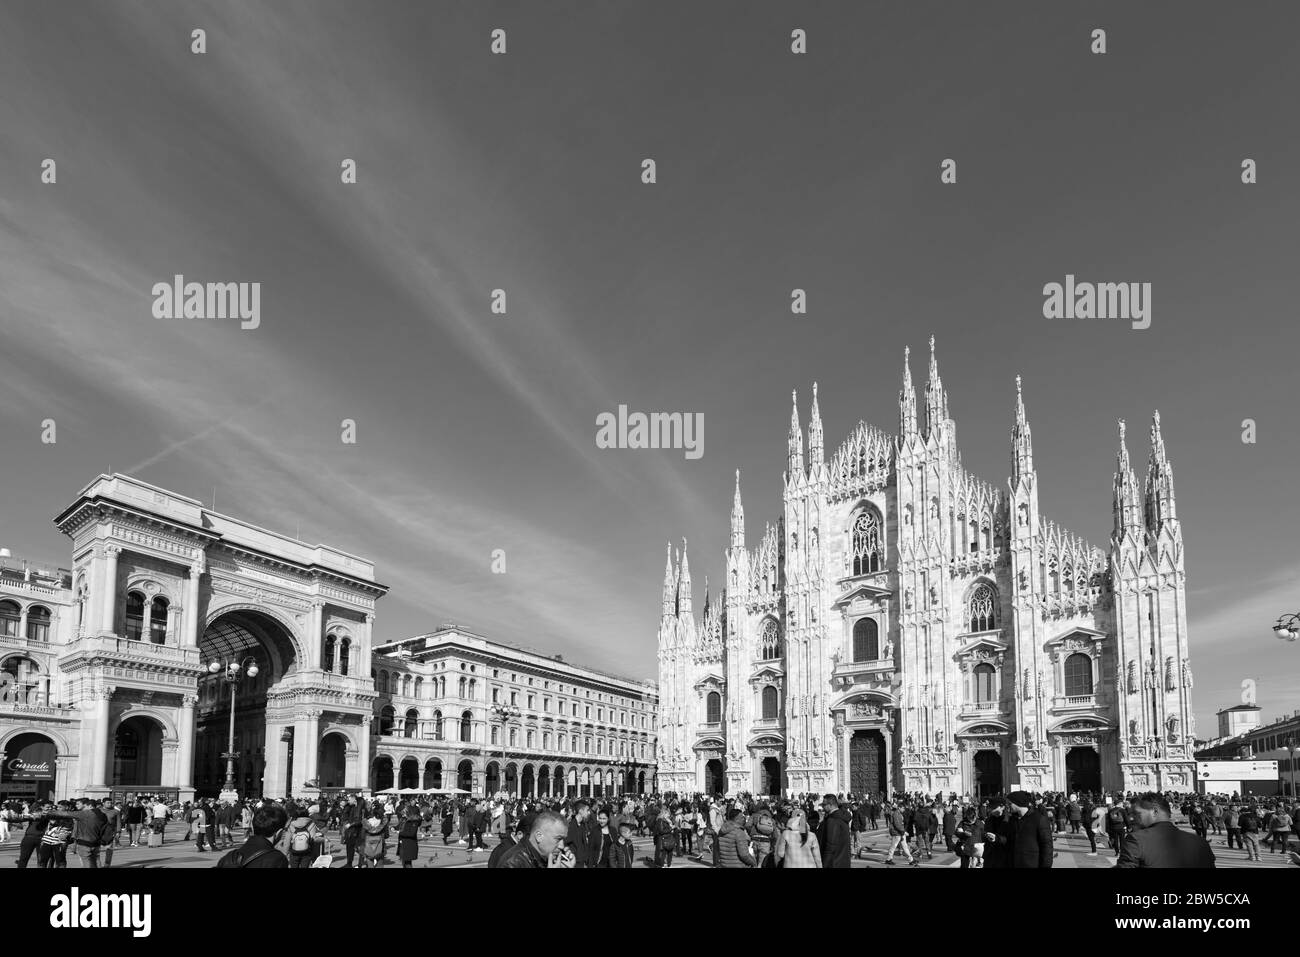 MAILAND, ITALIEN - 16. MÄRZ 2018: Schwarz-weiß-Bild des Mailänder Doms und der Galleria Vittorio Emanuele II während des sonnigen Tages in Mailand, Italien. Stockfoto